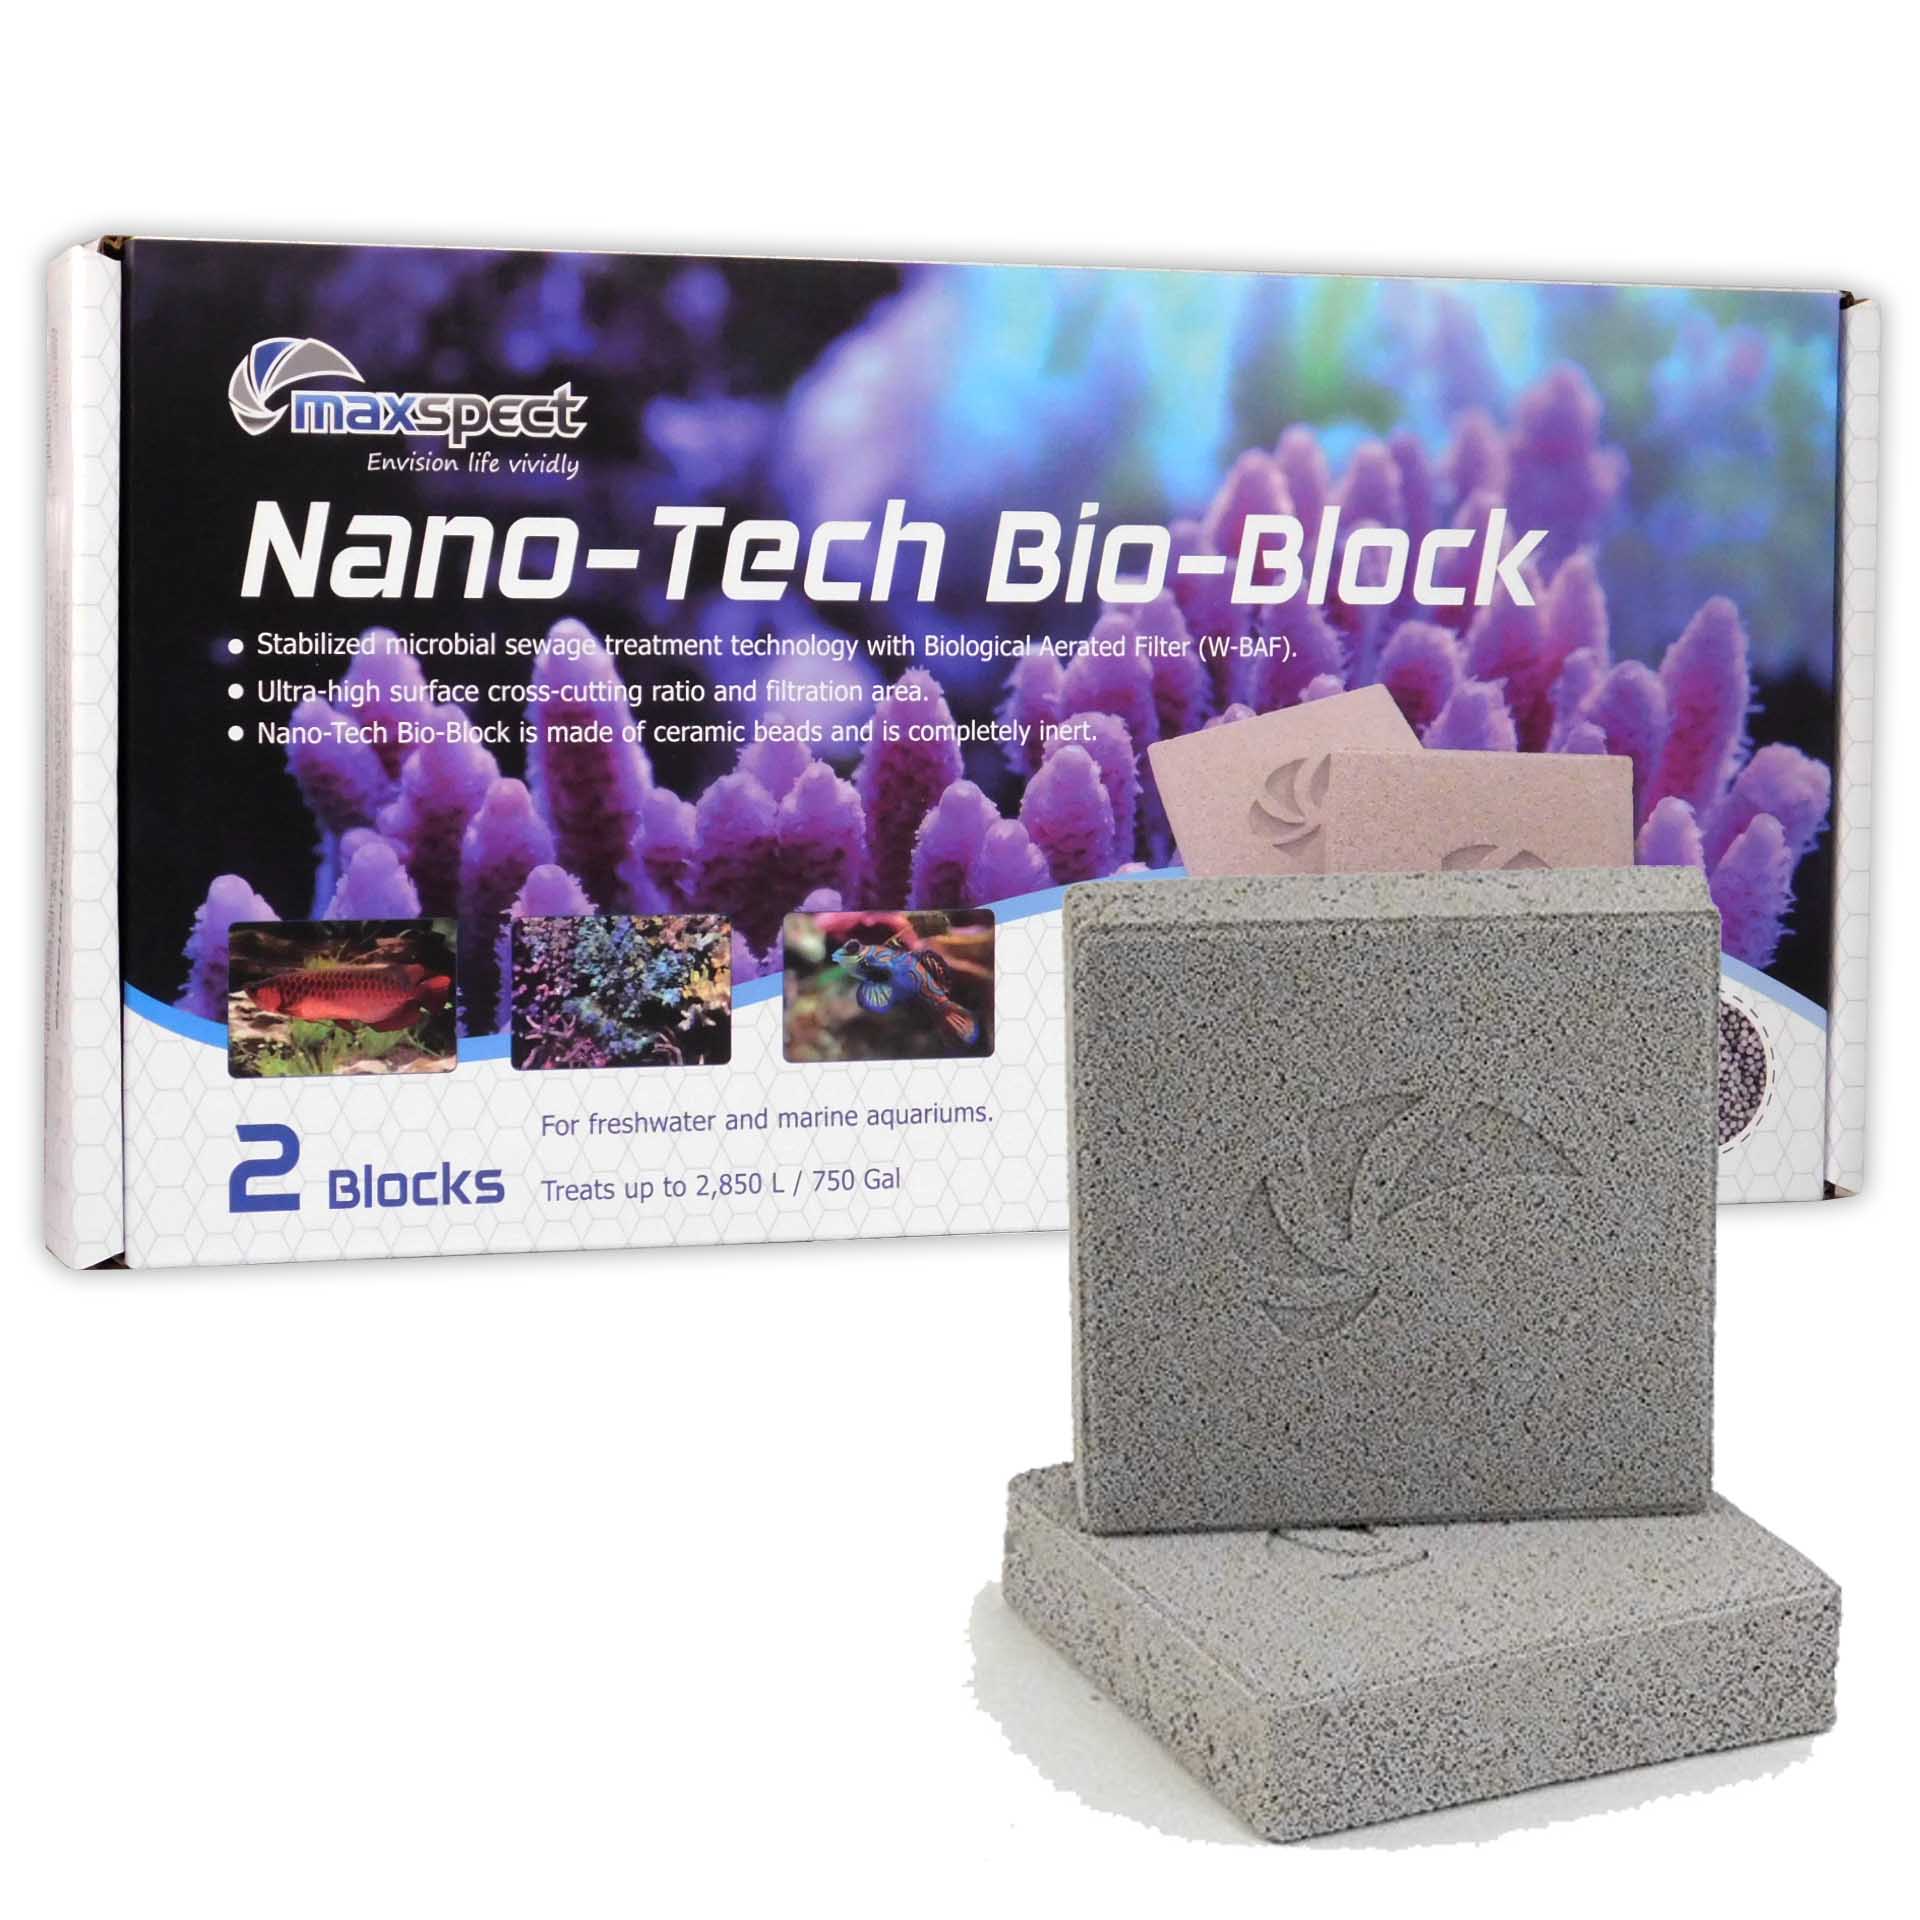 Maxspect Nano Tech Bio Blocks (2 Per Box)